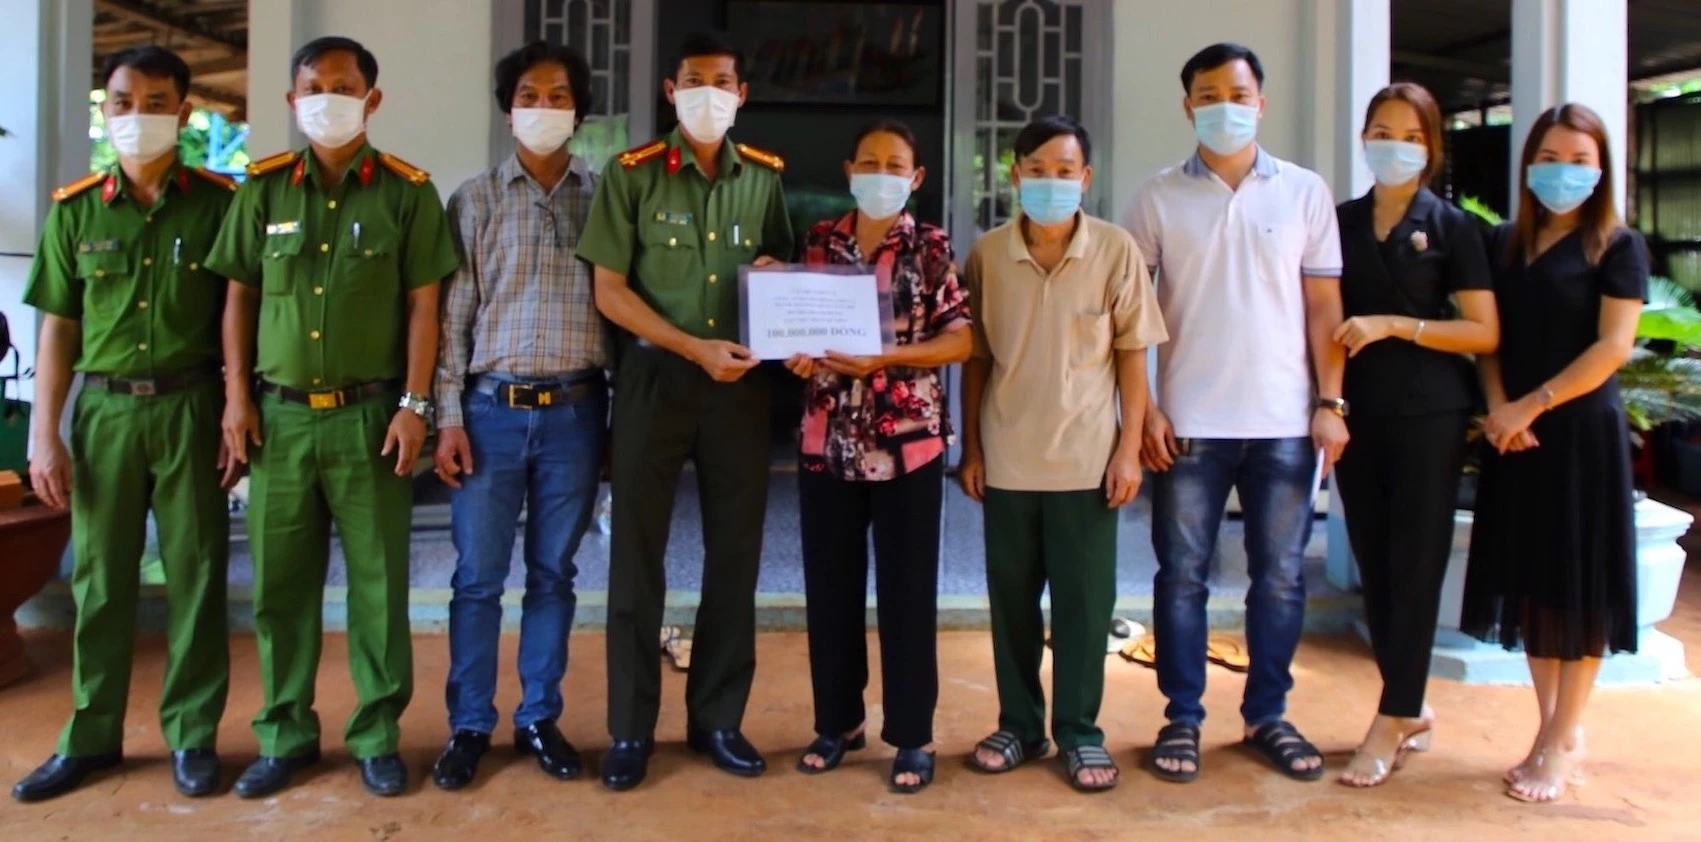 Đoàn thanh niên Công an huyện Đồng Phú trao kinh phí 100 triệu đồng cho mẹ của công an viên Đỗ Thành Hưng để chung tay giúp anh vượt cơn hoạn nạn